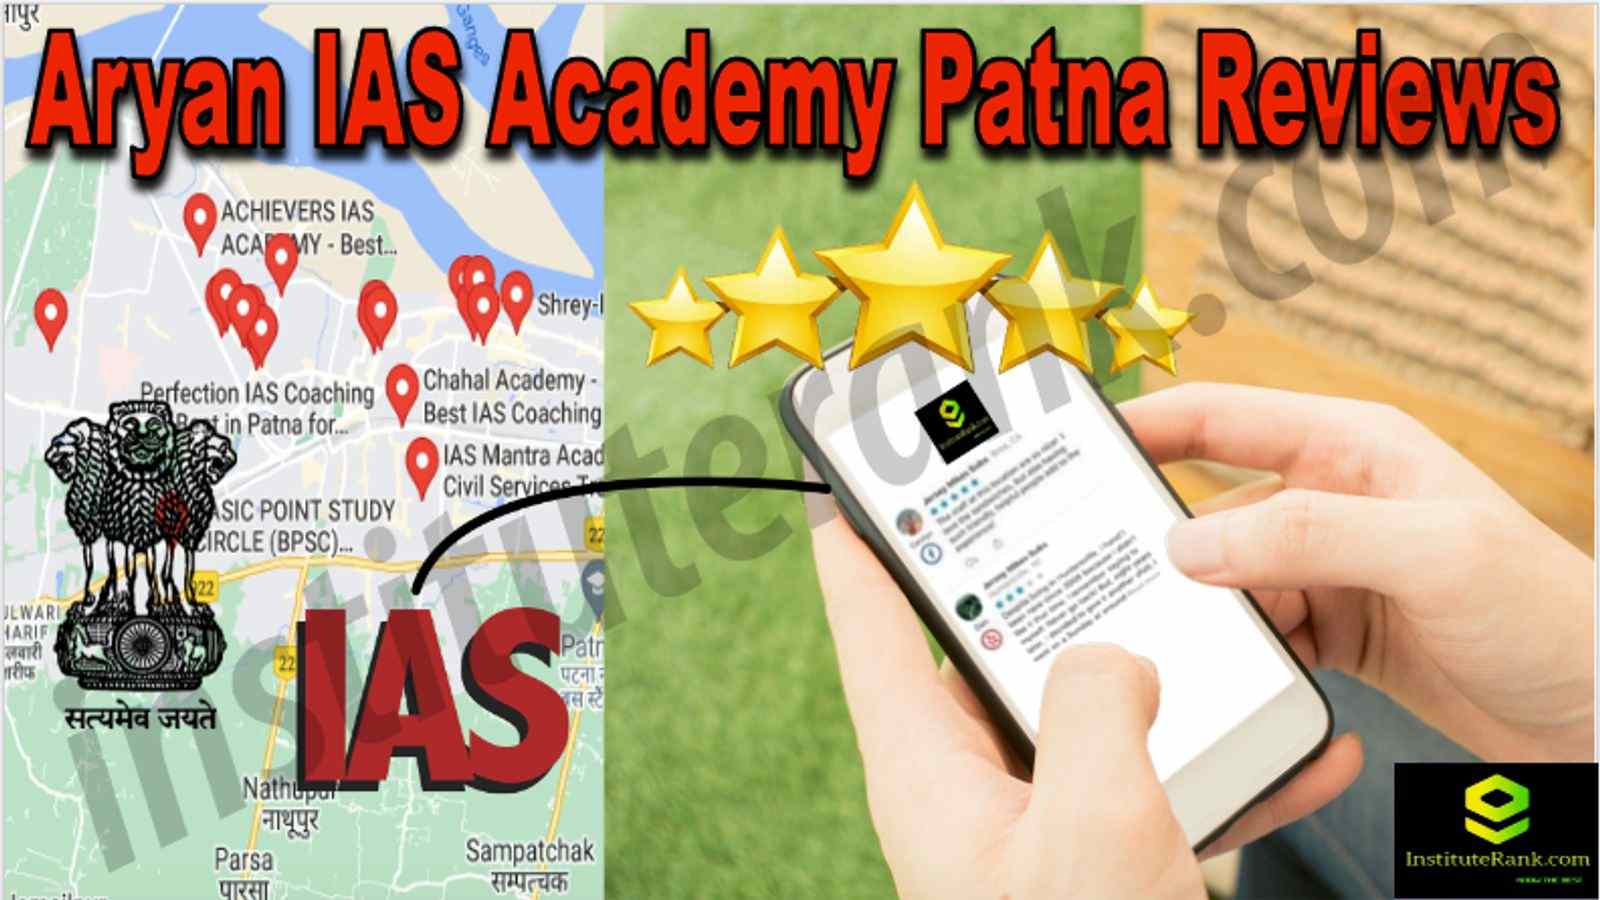 Aryan IAS Academy Patna Reviews